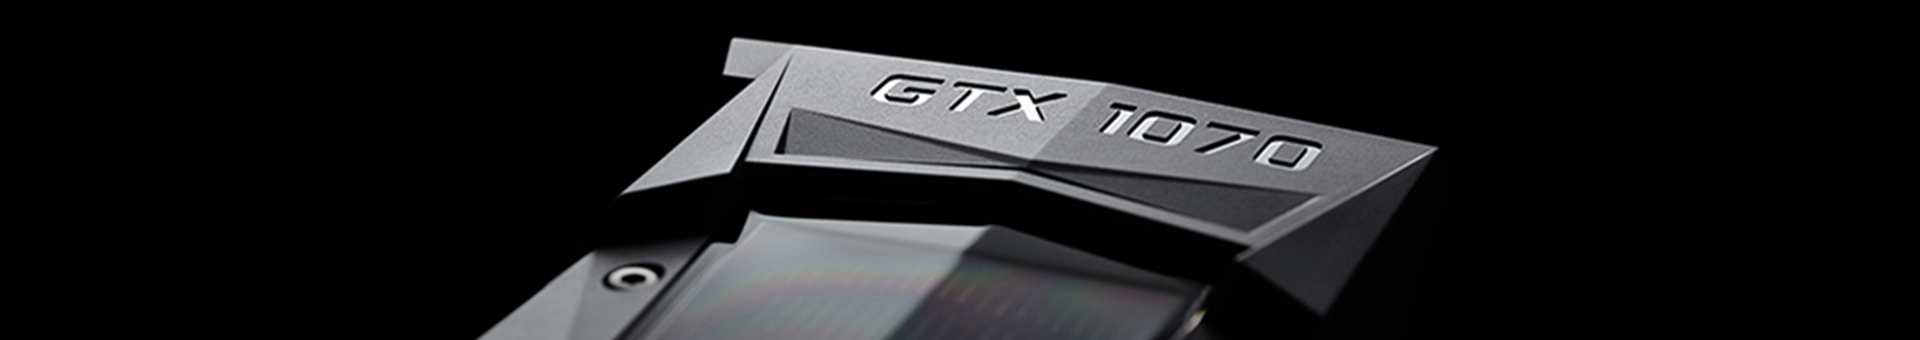 Review GTX 1070 Ti: vale a pena trocar de placa?